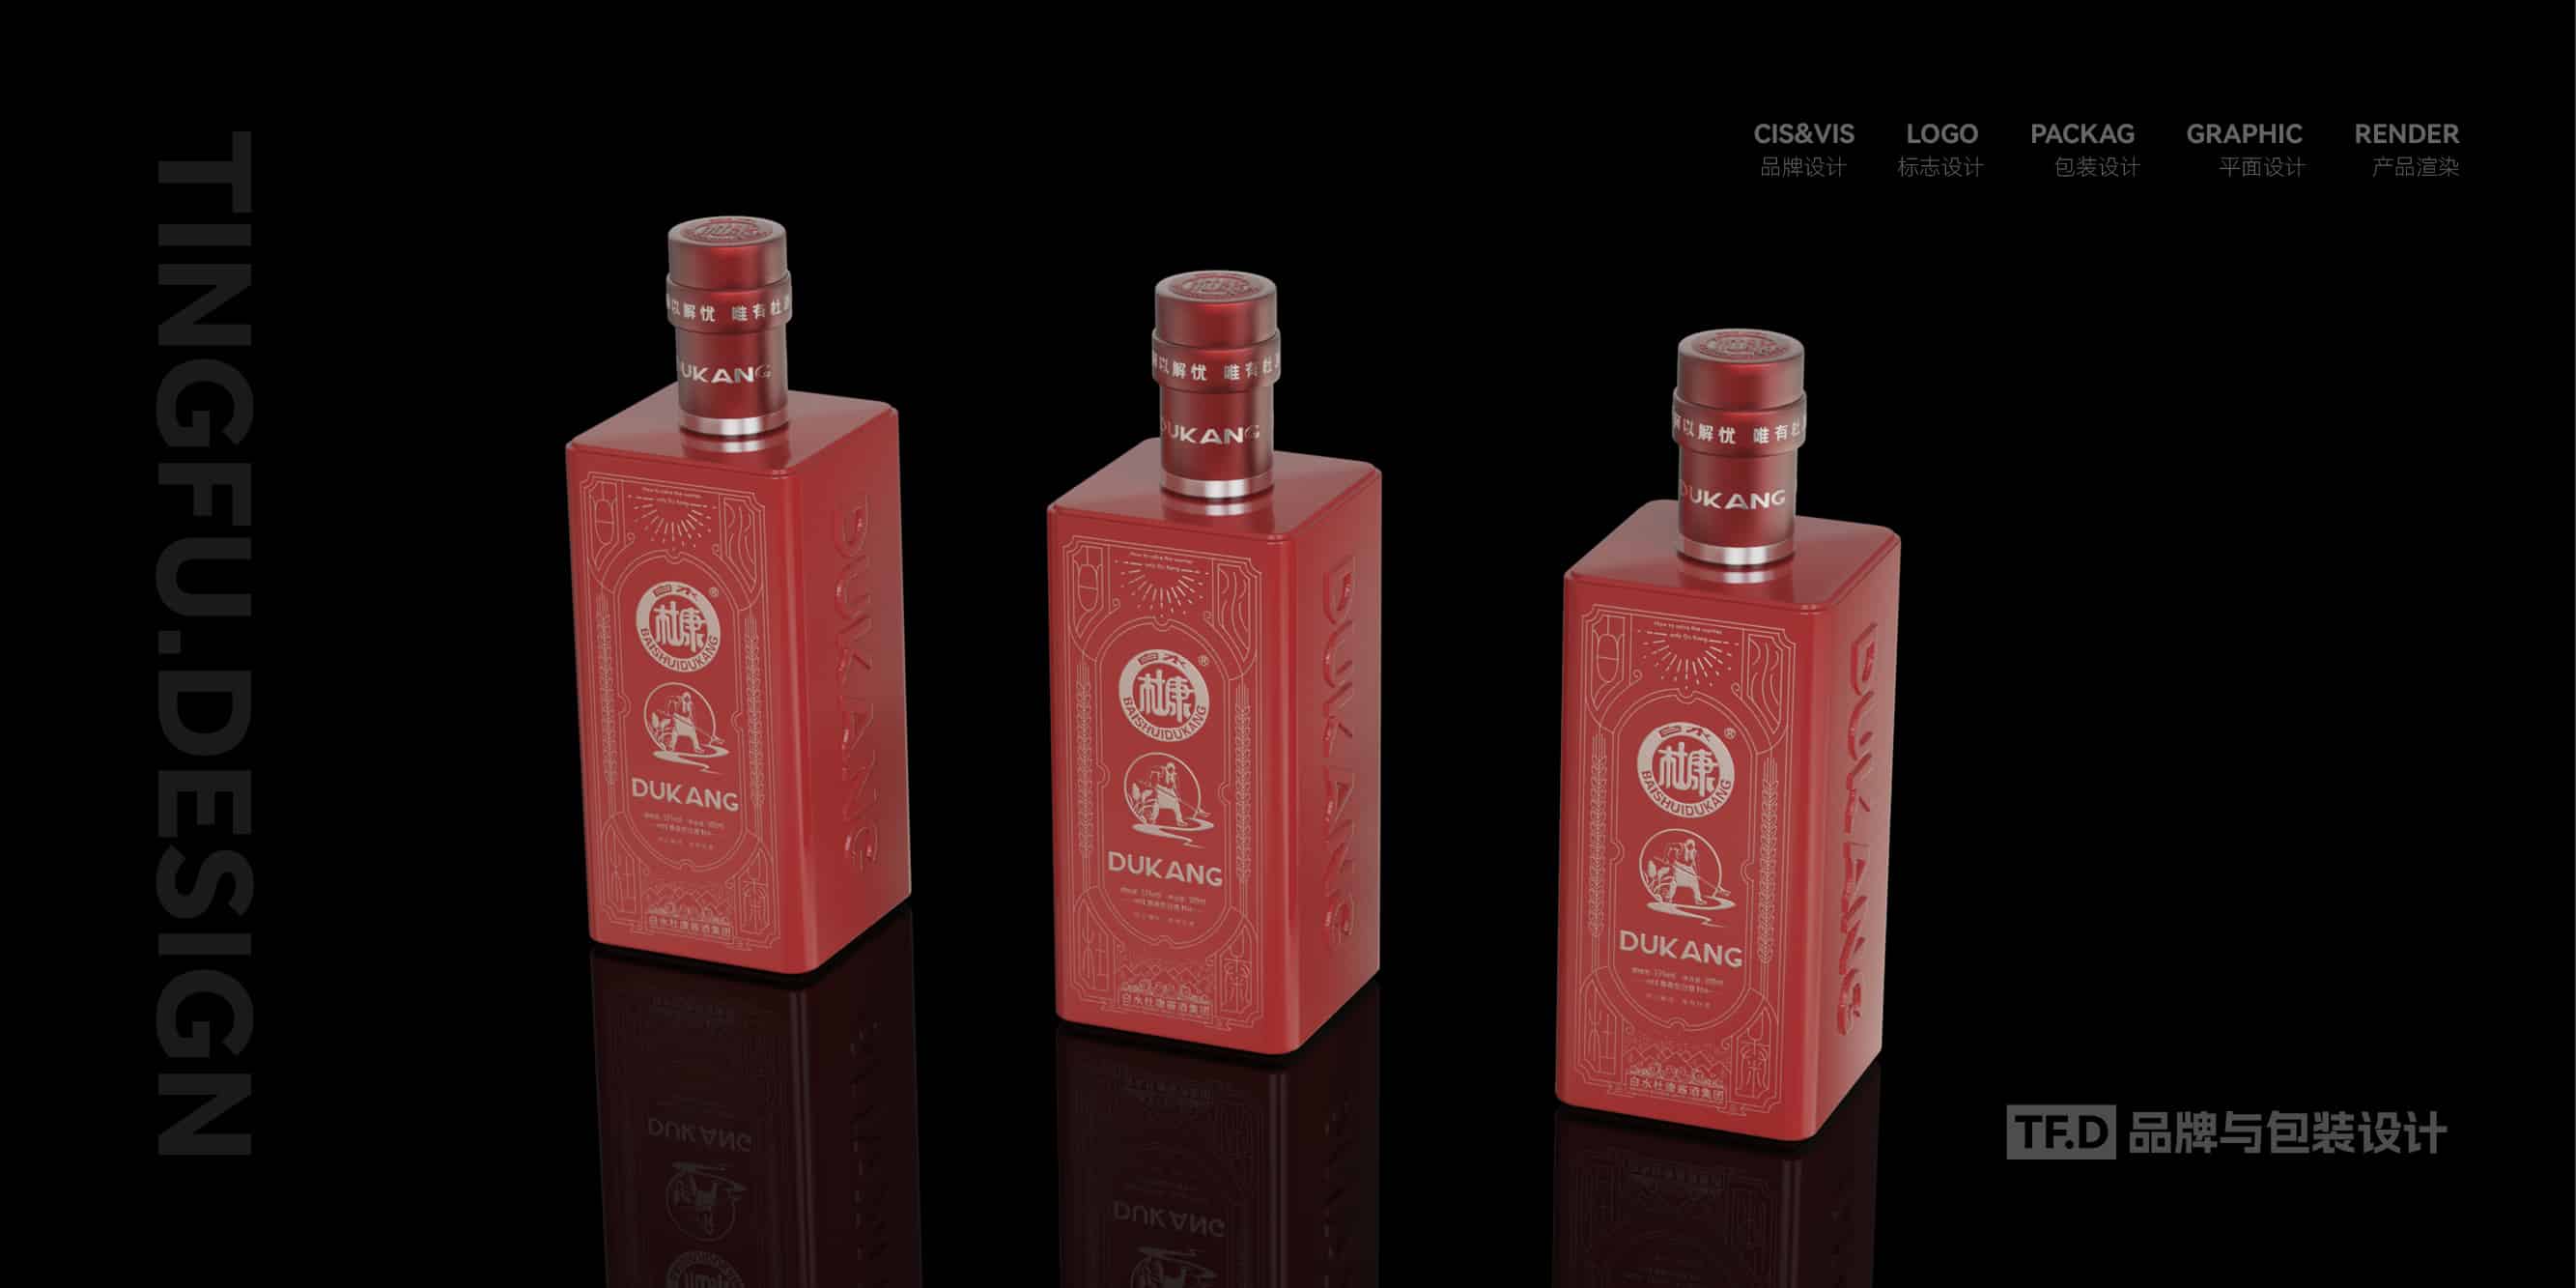 TFD品牌与包装设计-部分酒包装设计案例8-tuya.jpg